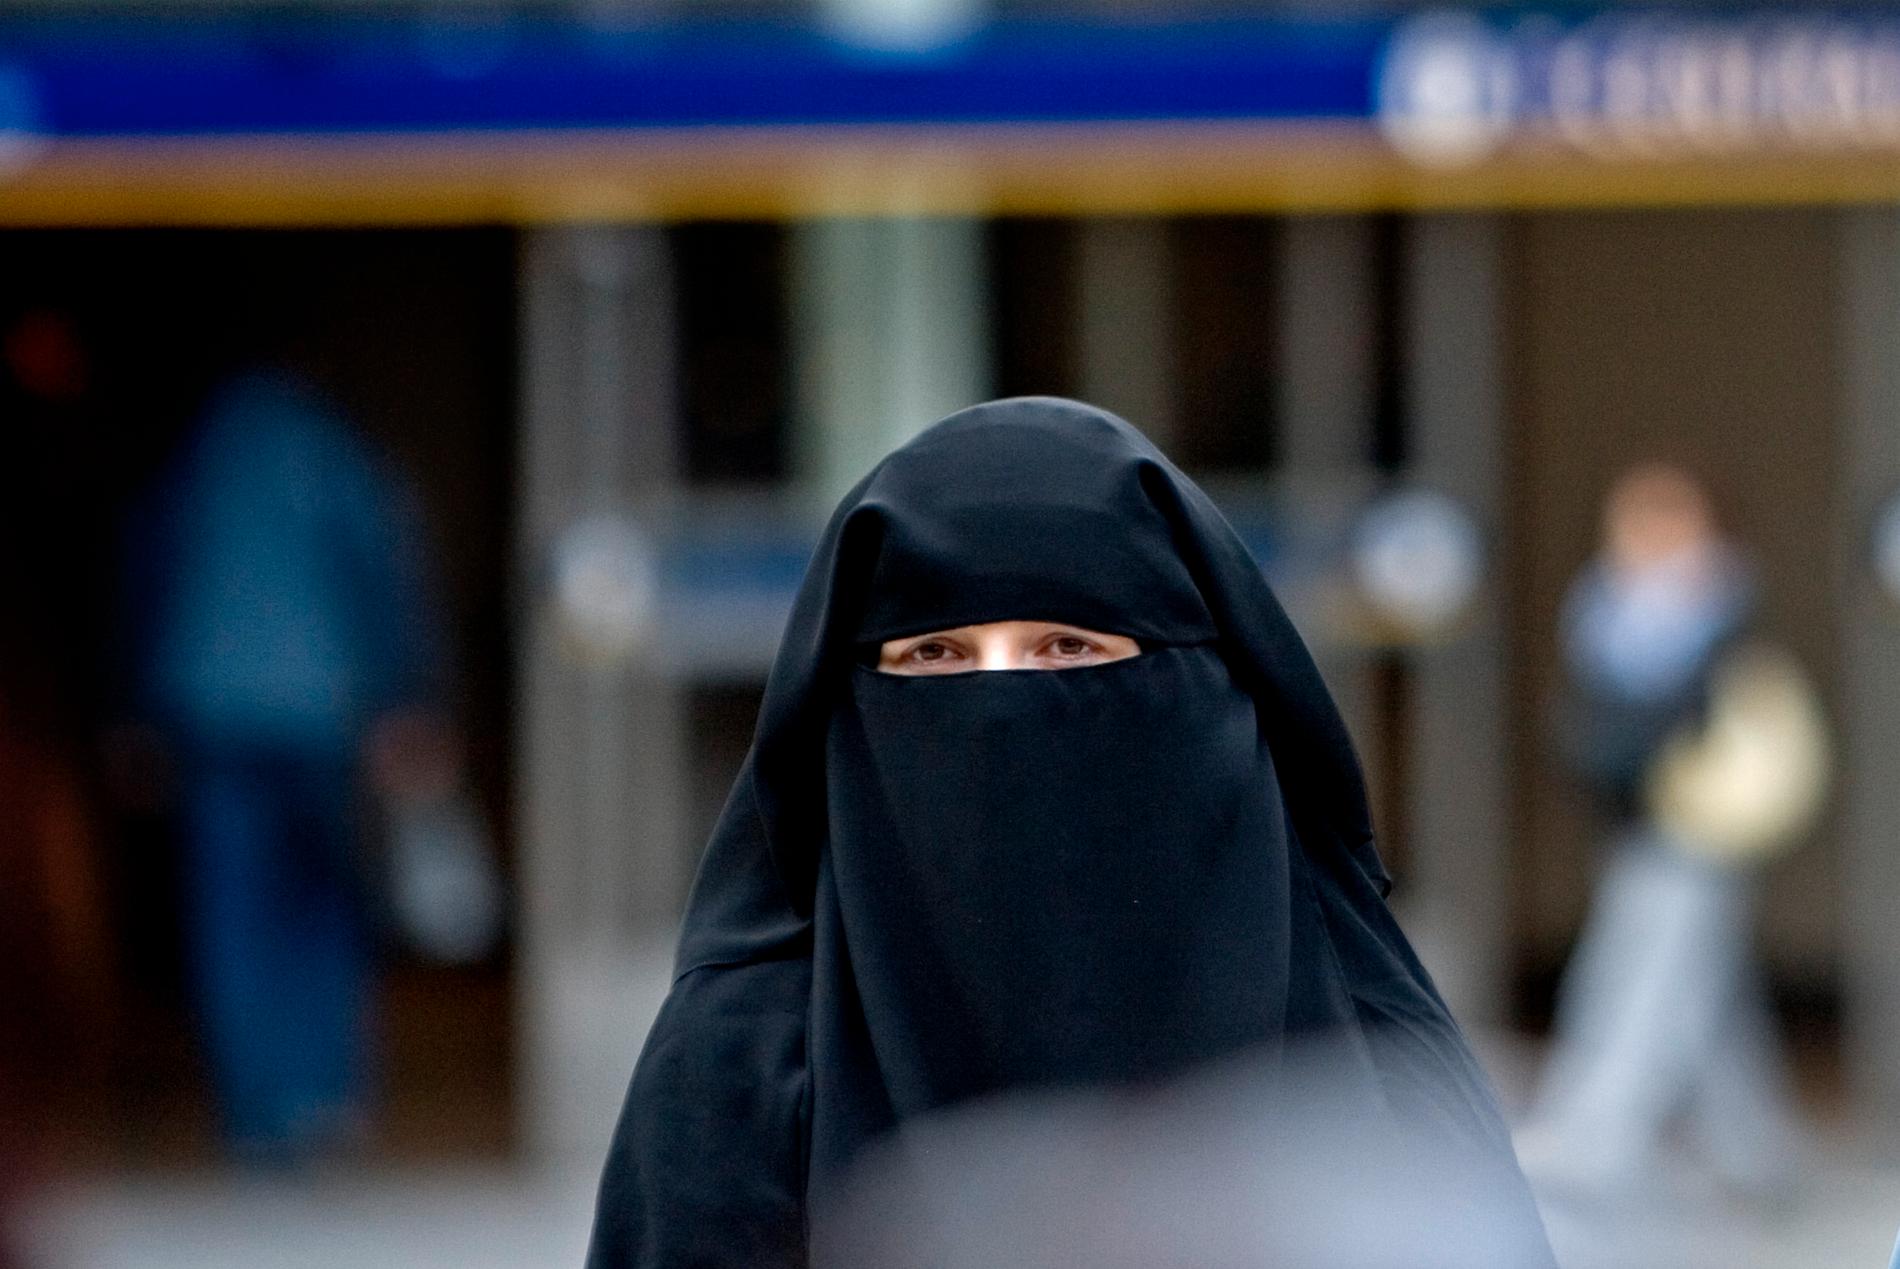 De våldsbejakande extremisterna pratar inte längre i första hand om att resa och kriga, utan predikar istället radikala idéer om att man ska isolera sig och tillämpa en väldigt strikt tolkning av islam, som att kvinnor ska bära heltäckande kläder. Arkivbild.